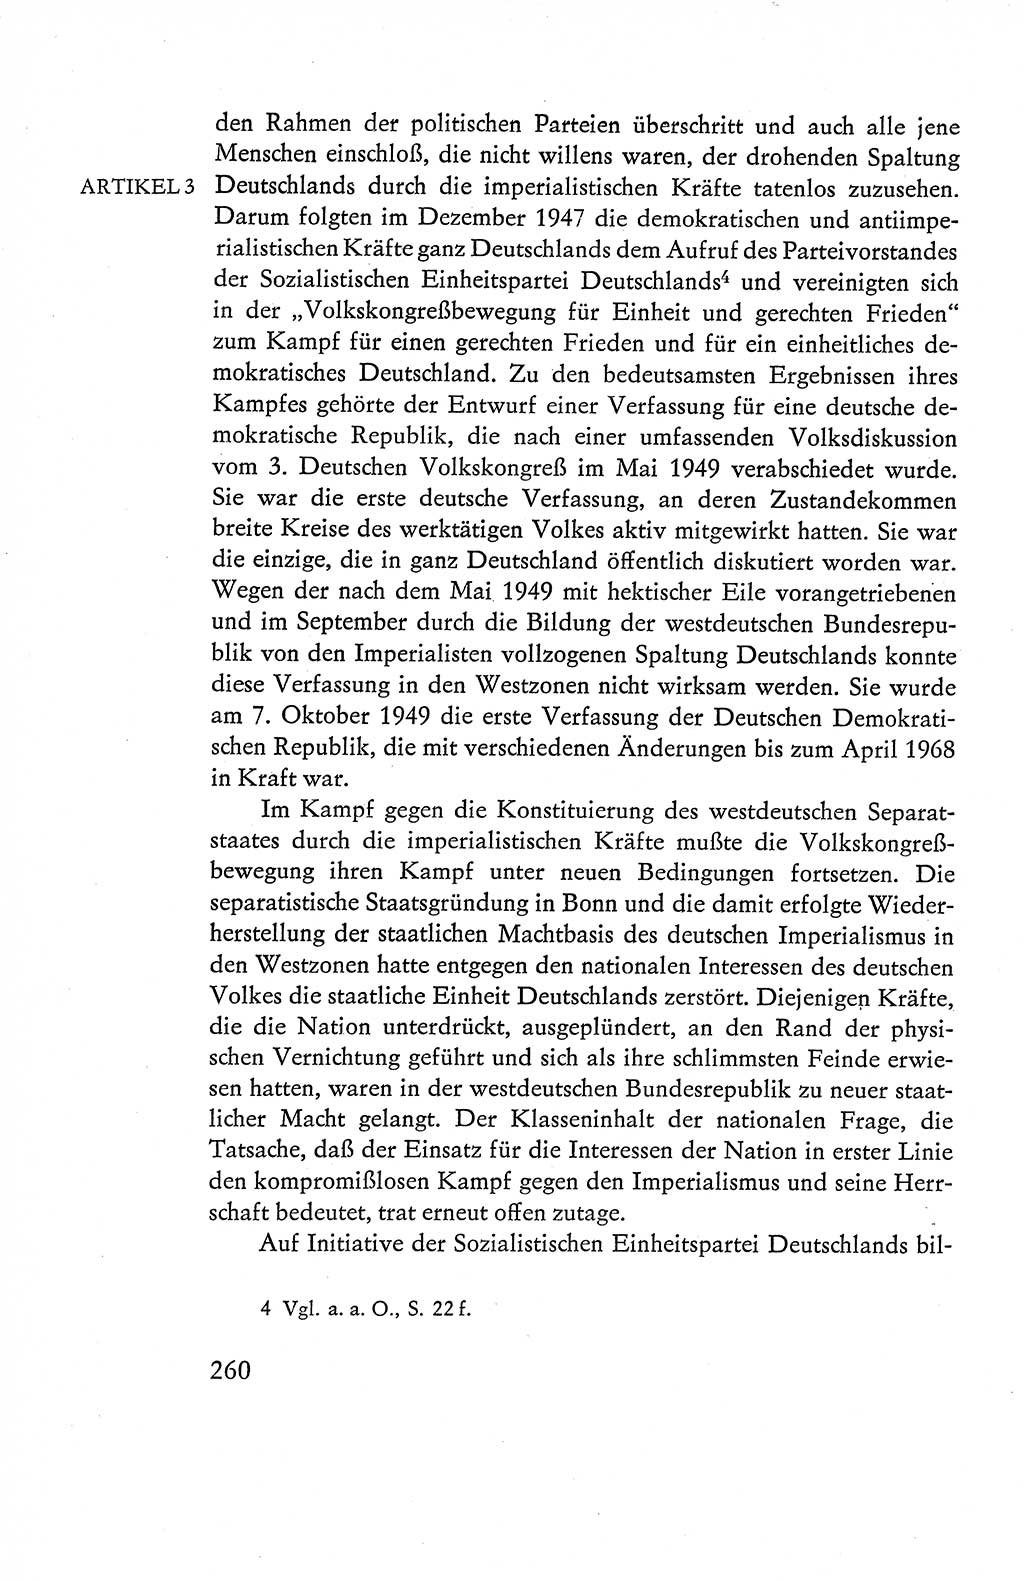 Verfassung der Deutschen Demokratischen Republik (DDR), Dokumente, Kommentar 1969, Band 1, Seite 260 (Verf. DDR Dok. Komm. 1969, Bd. 1, S. 260)